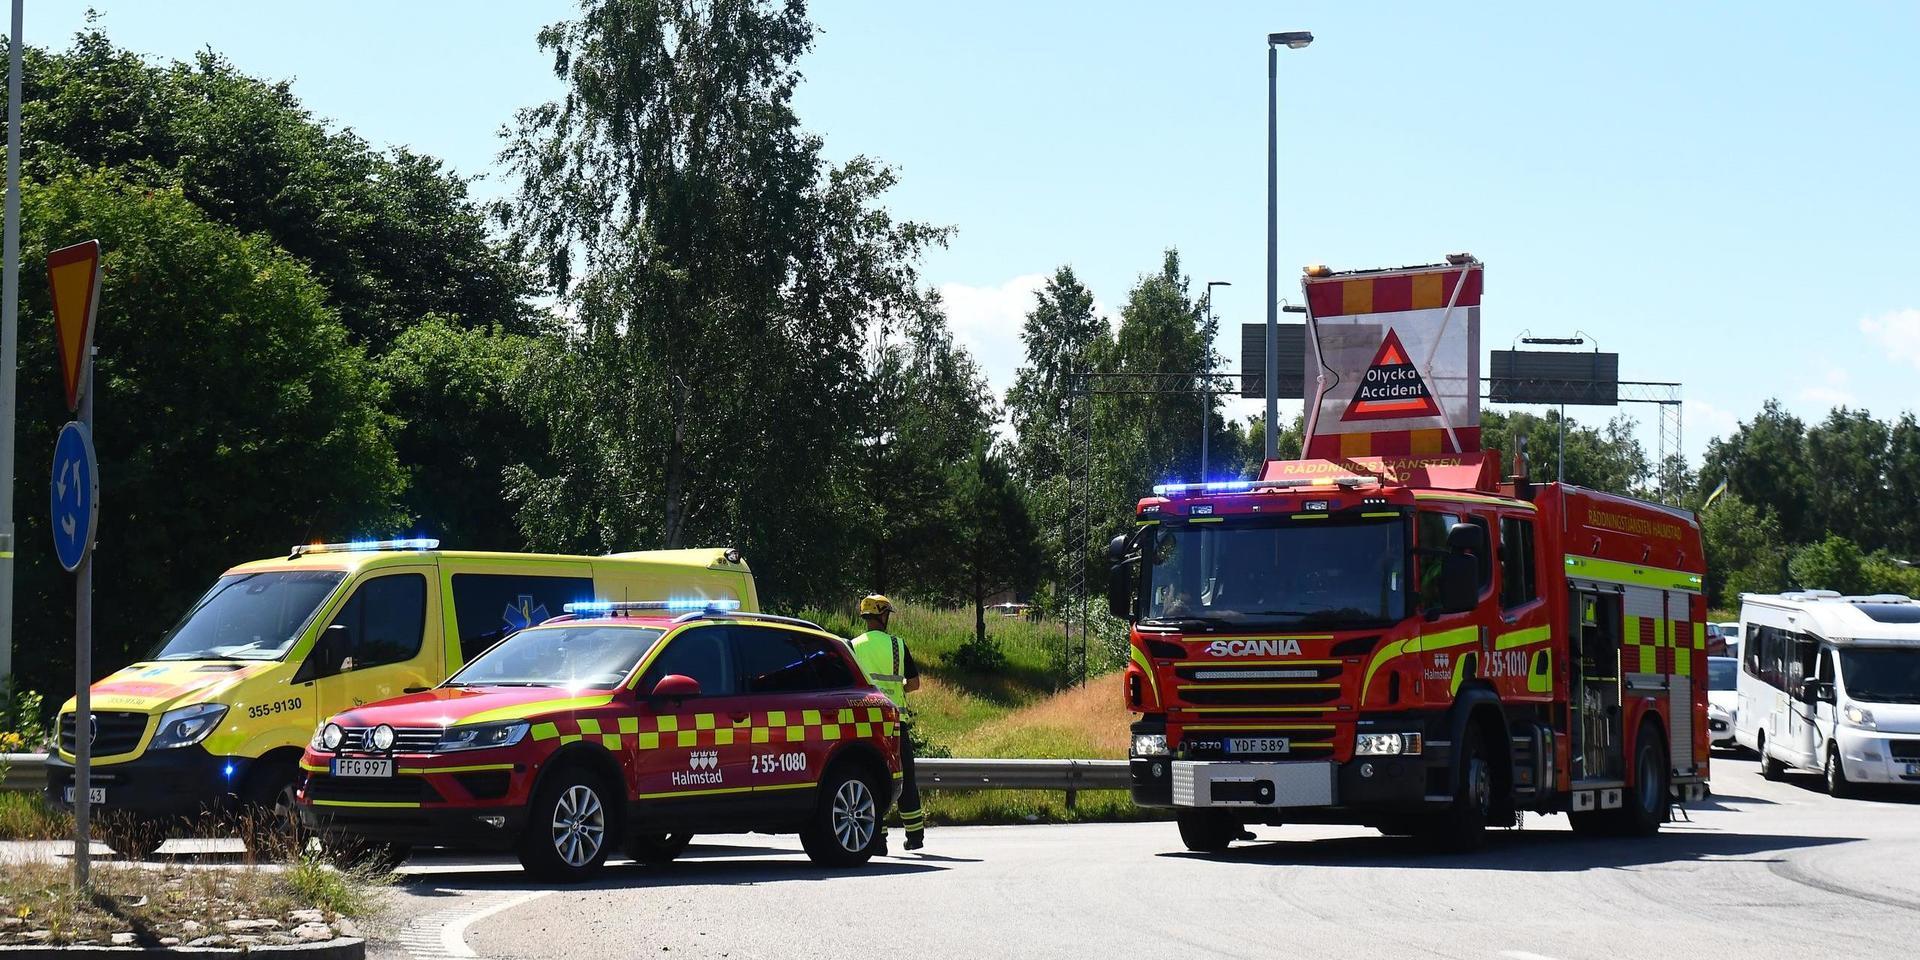 En olycka i rondellen vid Vallås orsakar stopp i trafiken. Två personbilar uppges vara inblandade, men det är oklart om någon kommit till skada.